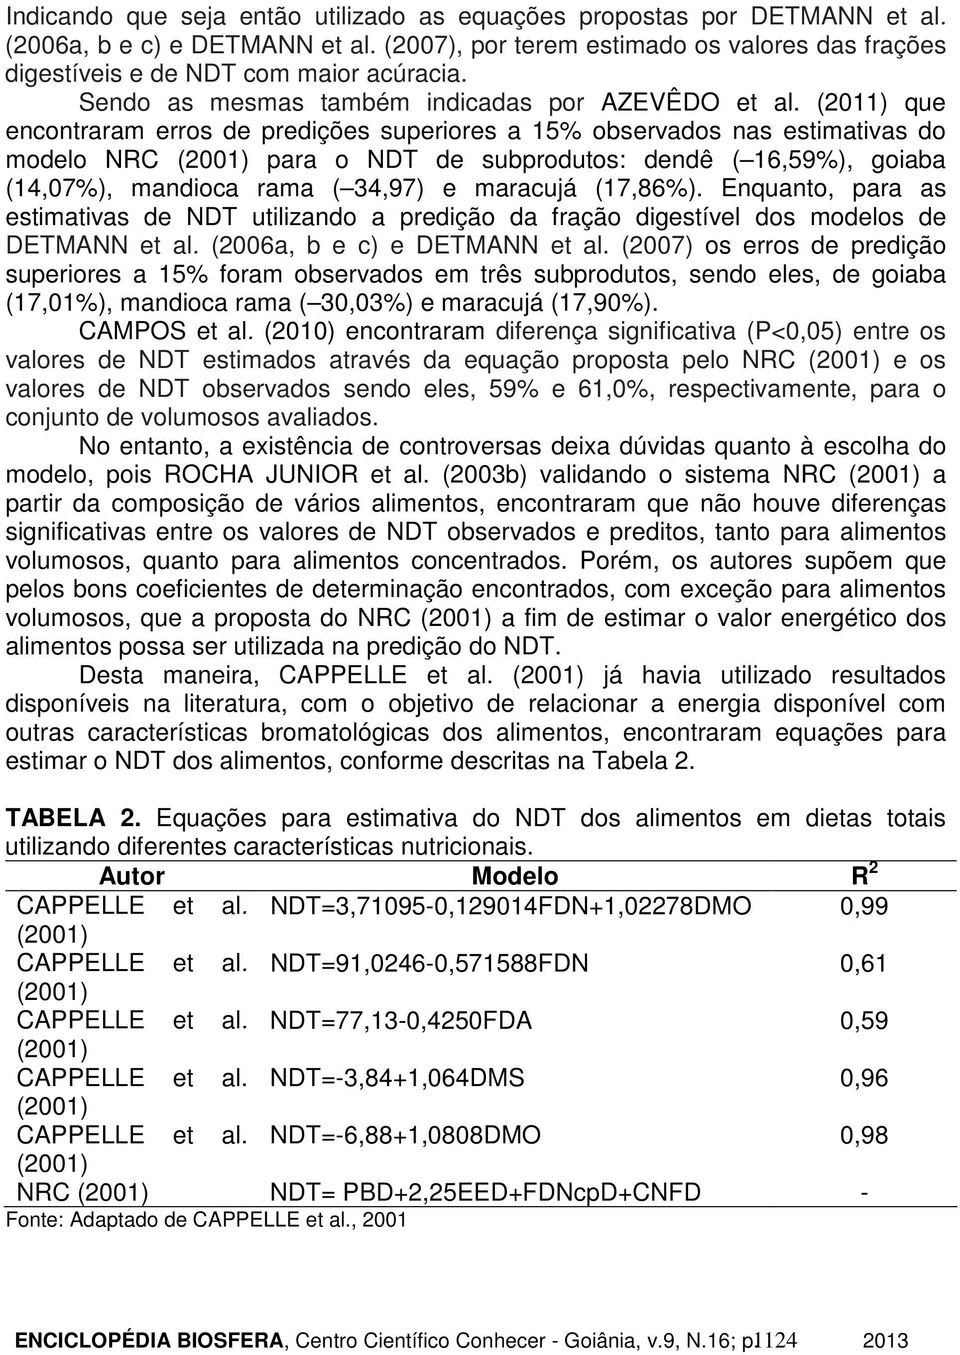 (2011) que encontraram erros de predições superiores a 15% observados nas estimativas do modelo NRC para o NDT de subprodutos: dendê ( 16,59%), goiaba (14,07%), mandioca rama ( 34,97) e maracujá